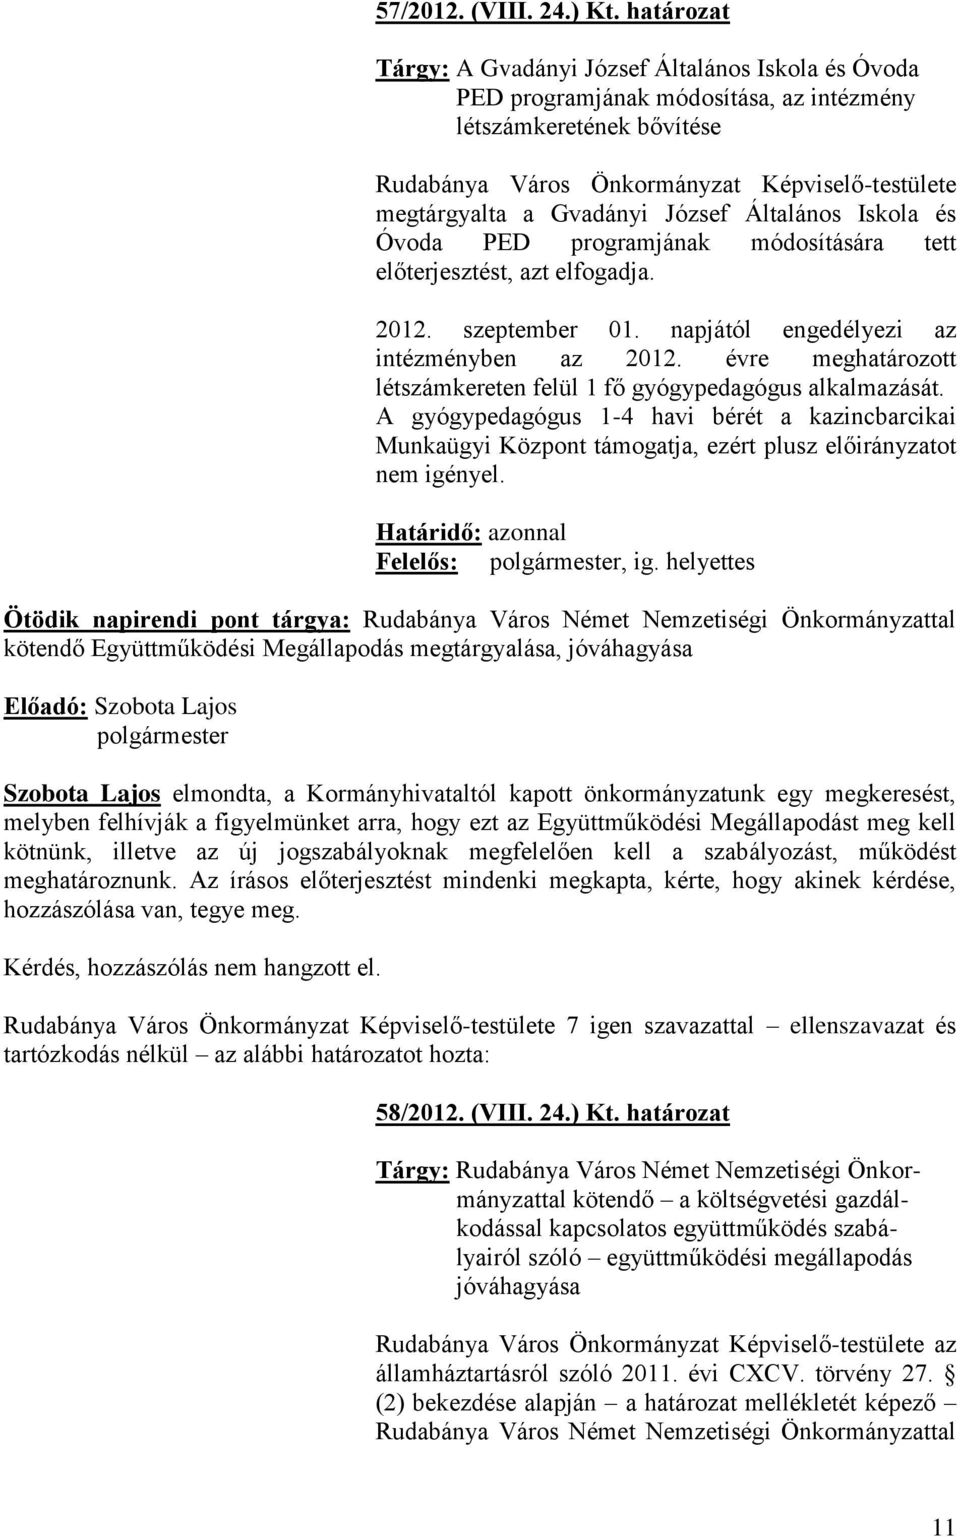 Gvadányi József Általános Iskola és Óvoda PED programjának módosítására tett előterjesztést, azt elfogadja. 2012. szeptember 01. napjától engedélyezi az intézményben az 2012.